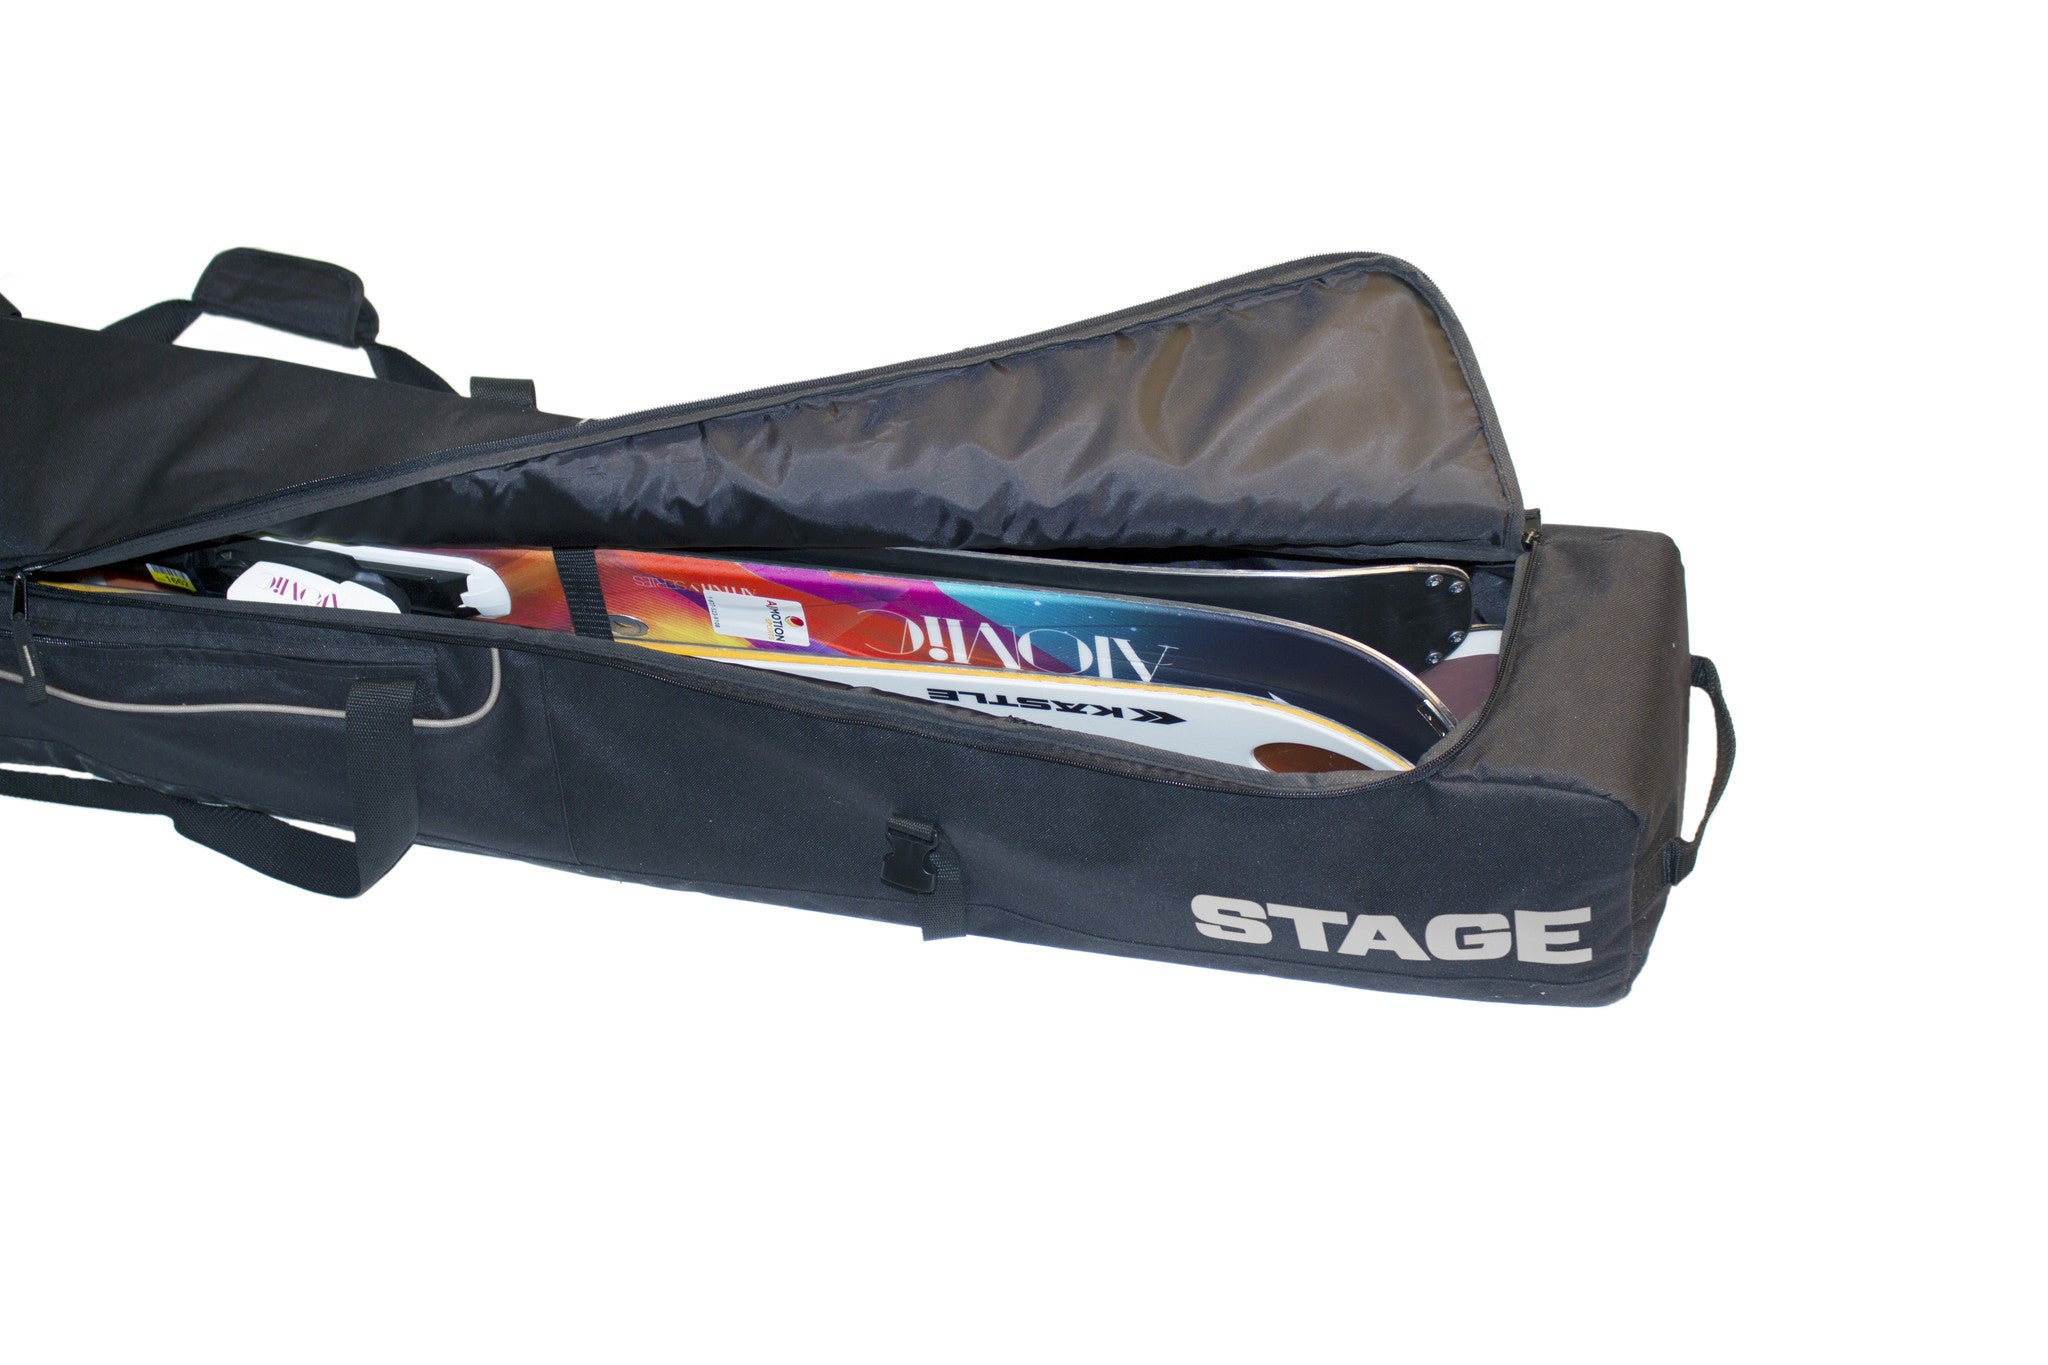 Basic Ski Bag